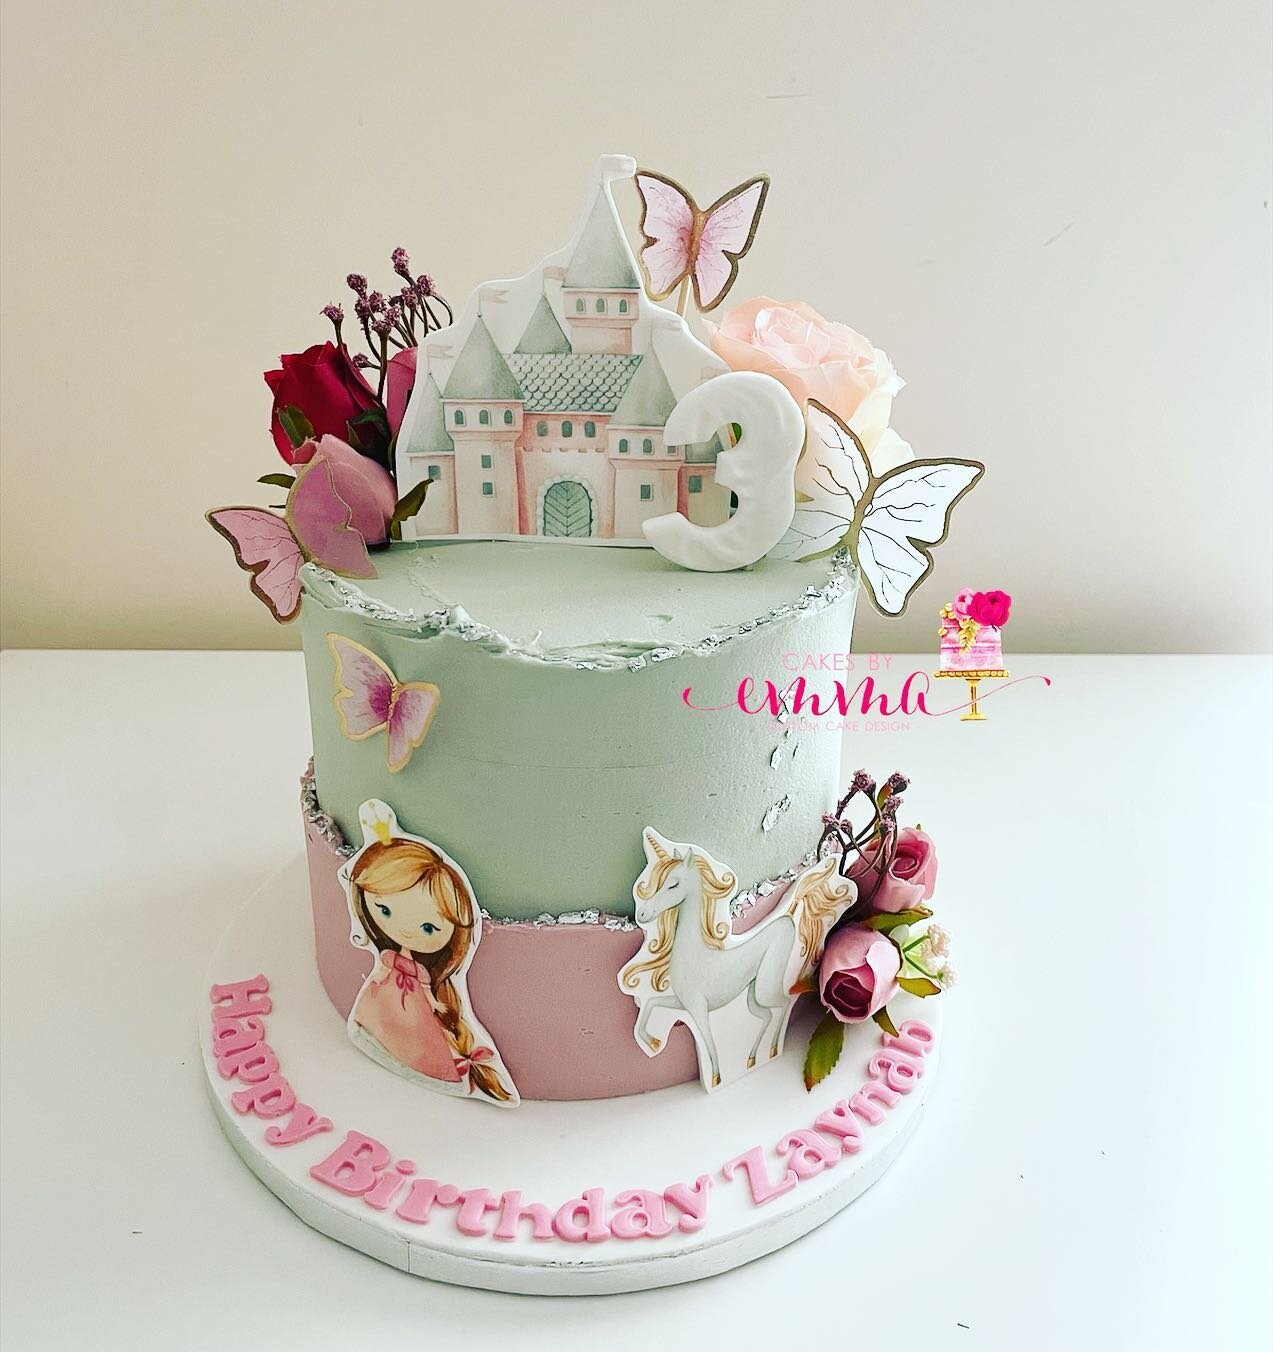 #prettycakes #princesscake #3rdbirthdaycake #birthday #cake #birthdaycake #prestwoodcakes #greatmissendencakes #highwycombecakes #buckscakes